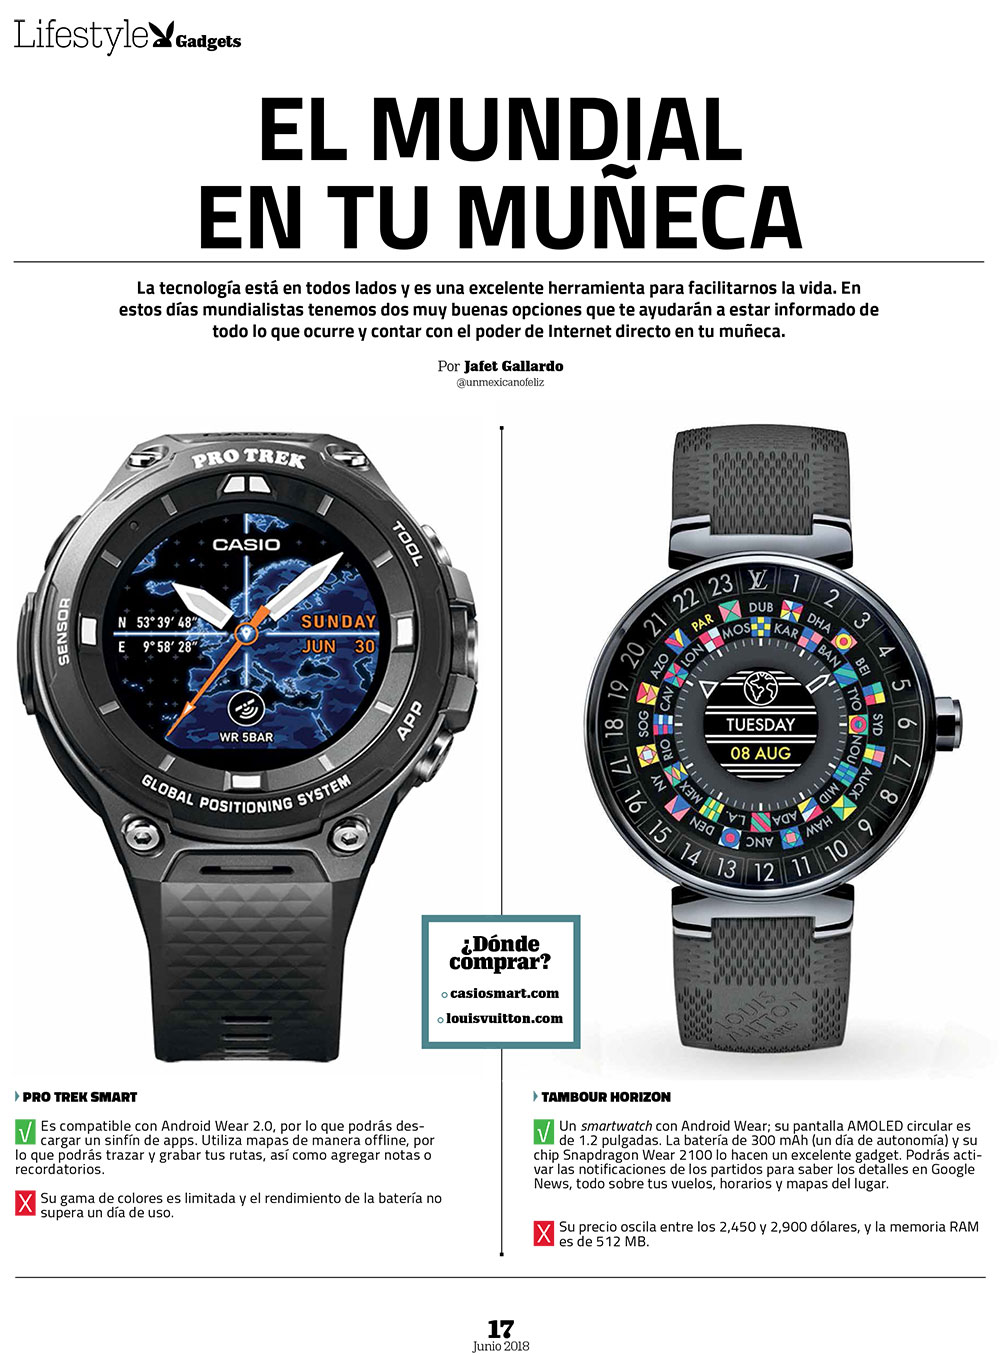 Gadgets-relojes-mundial